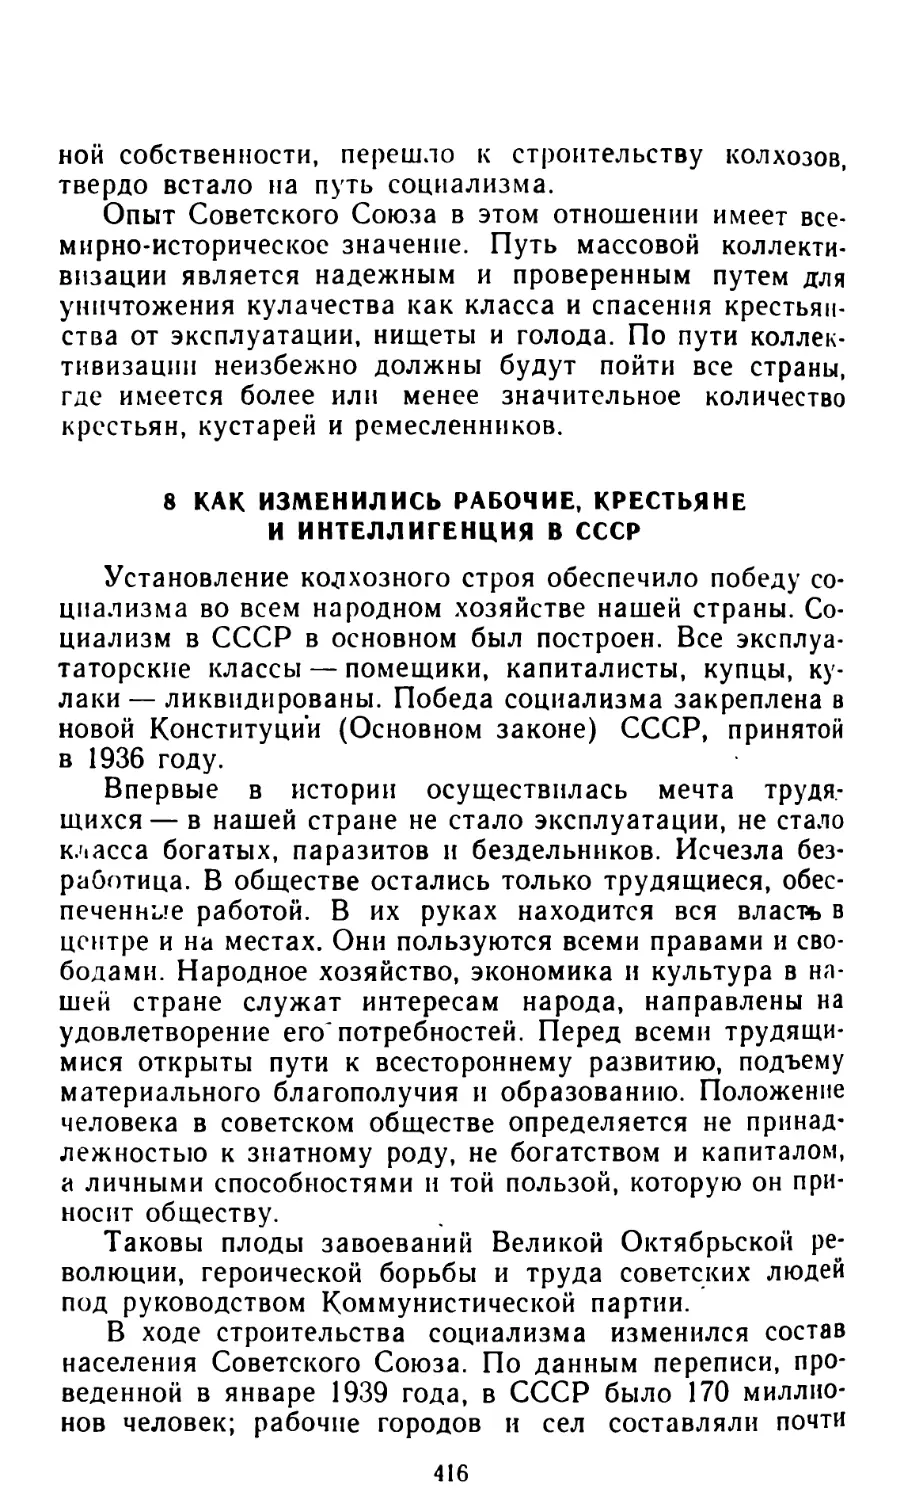 8. Как изменились рабочие, крестьяне и интеллигенция в СССР